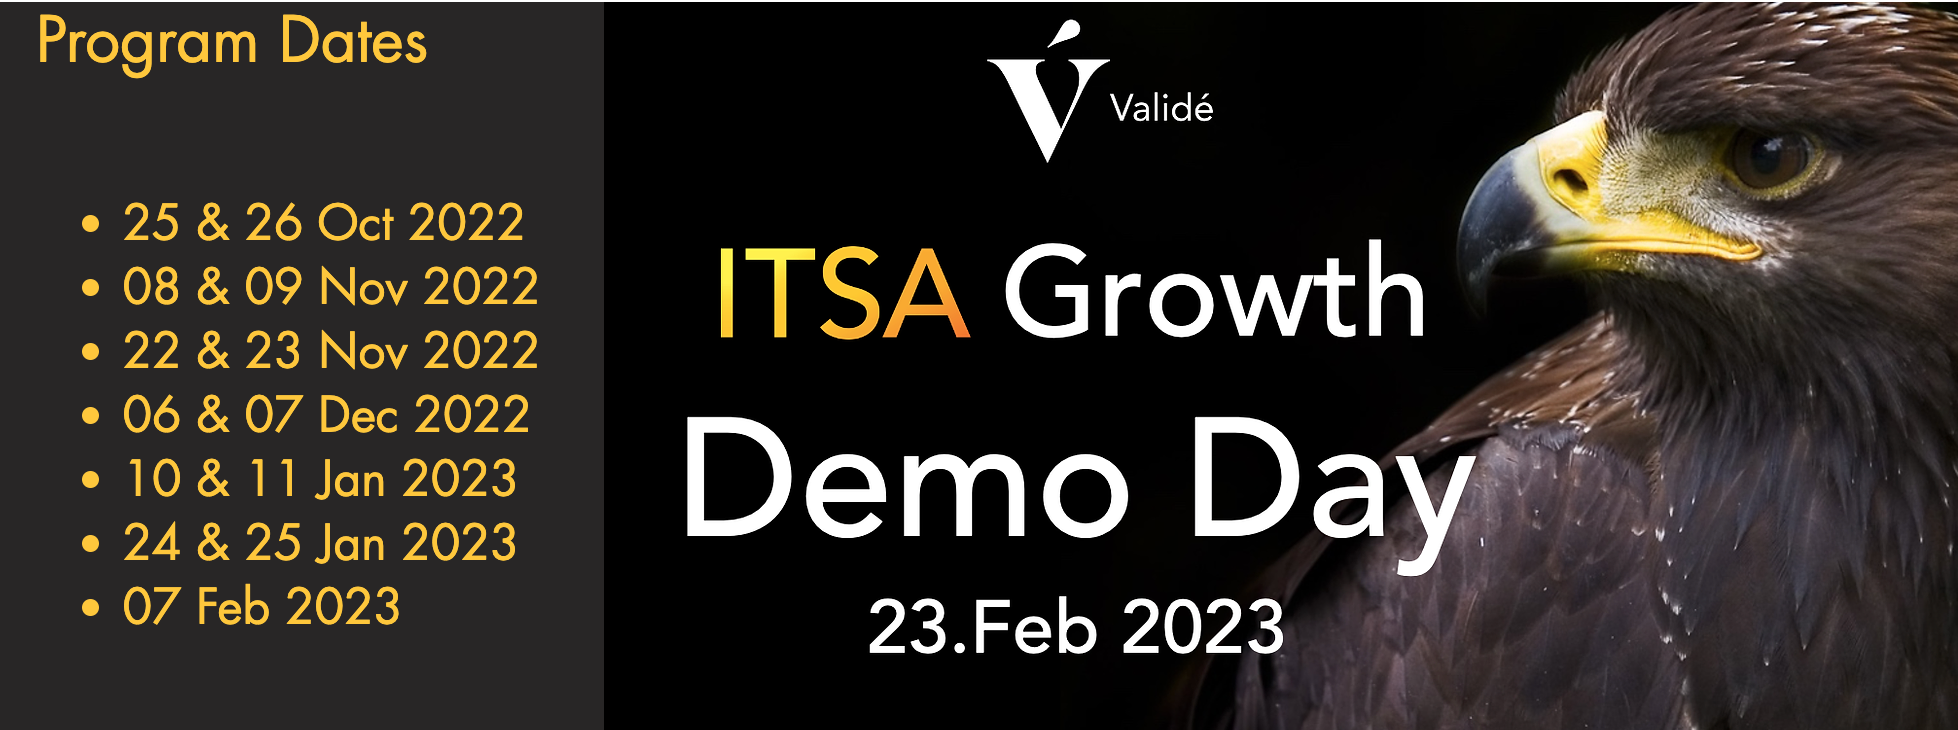 ITSA Growth nr4 datoer og program